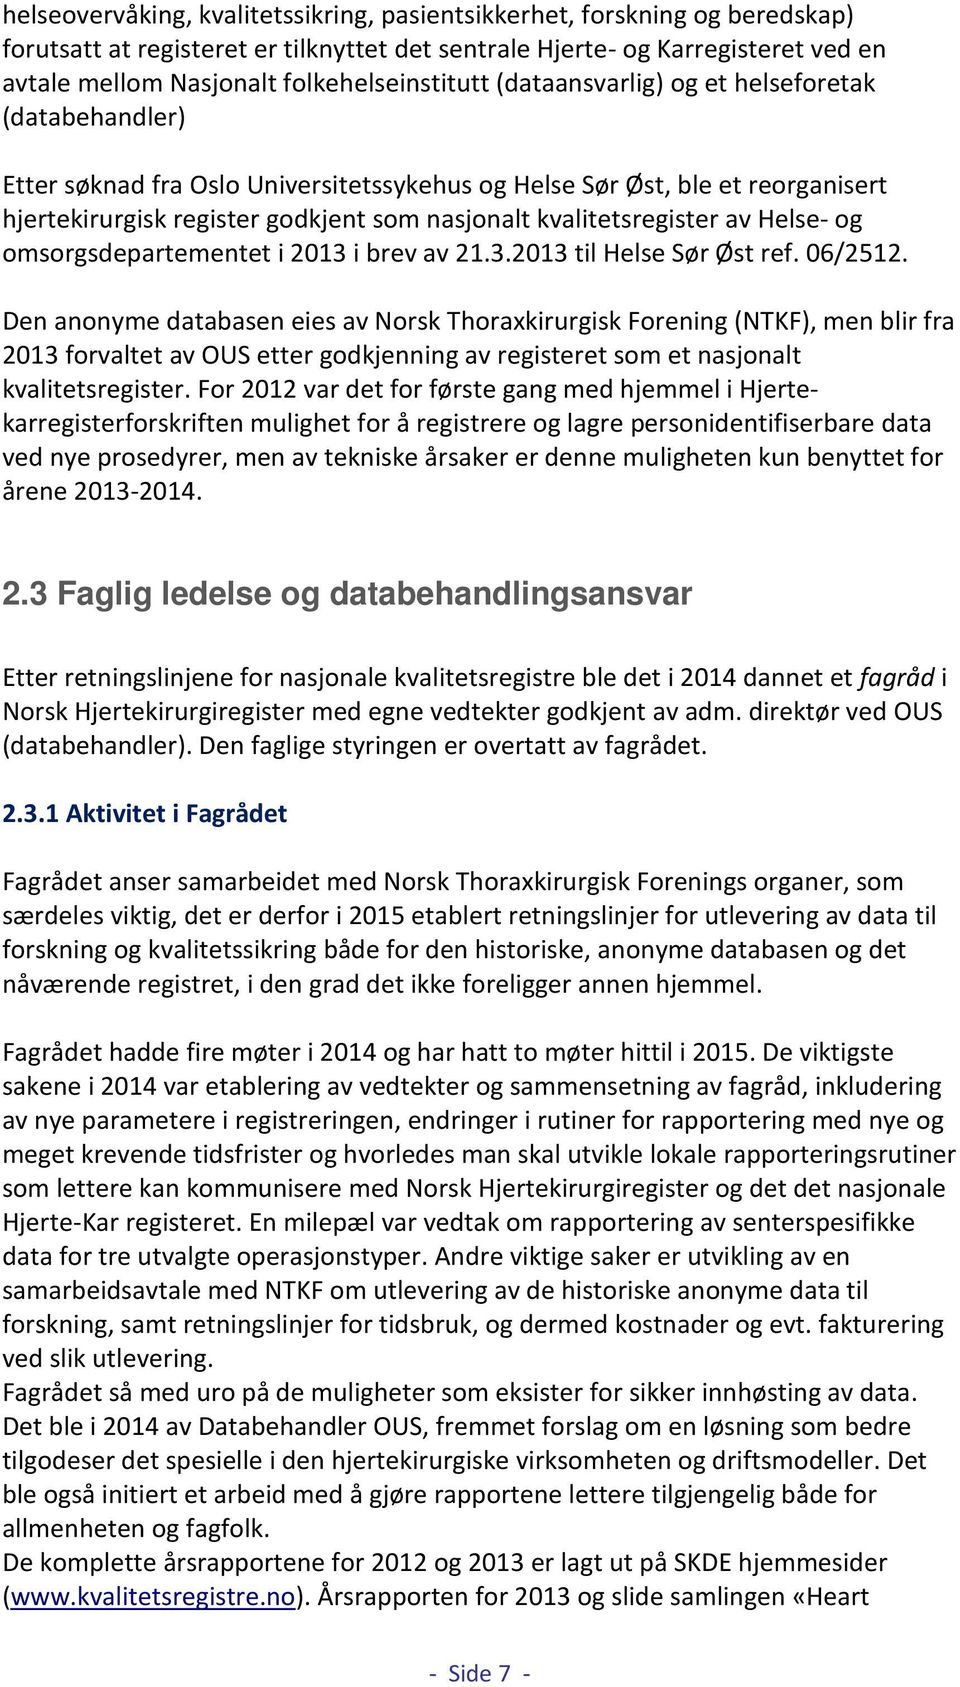 kvalitetsregister av Helse- og omsorgsdepartementet i 2013 i brev av 21.3.2013 til Helse Sør Øst ref. 06/2512.